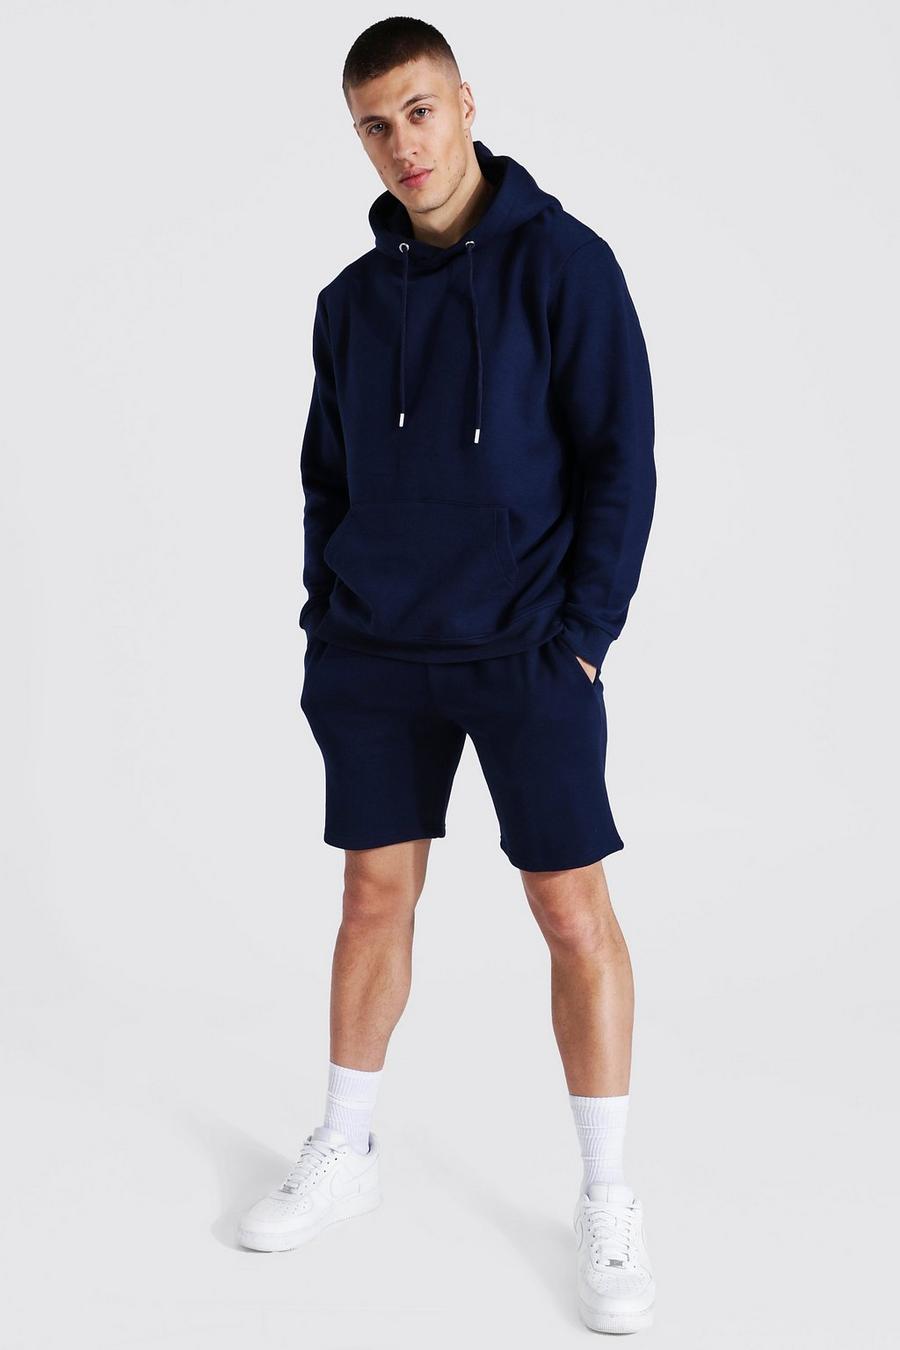 Chándal Regular de pantalón corto y sudadera con capucha de materiales reciclados, Navy azul marino image number 1